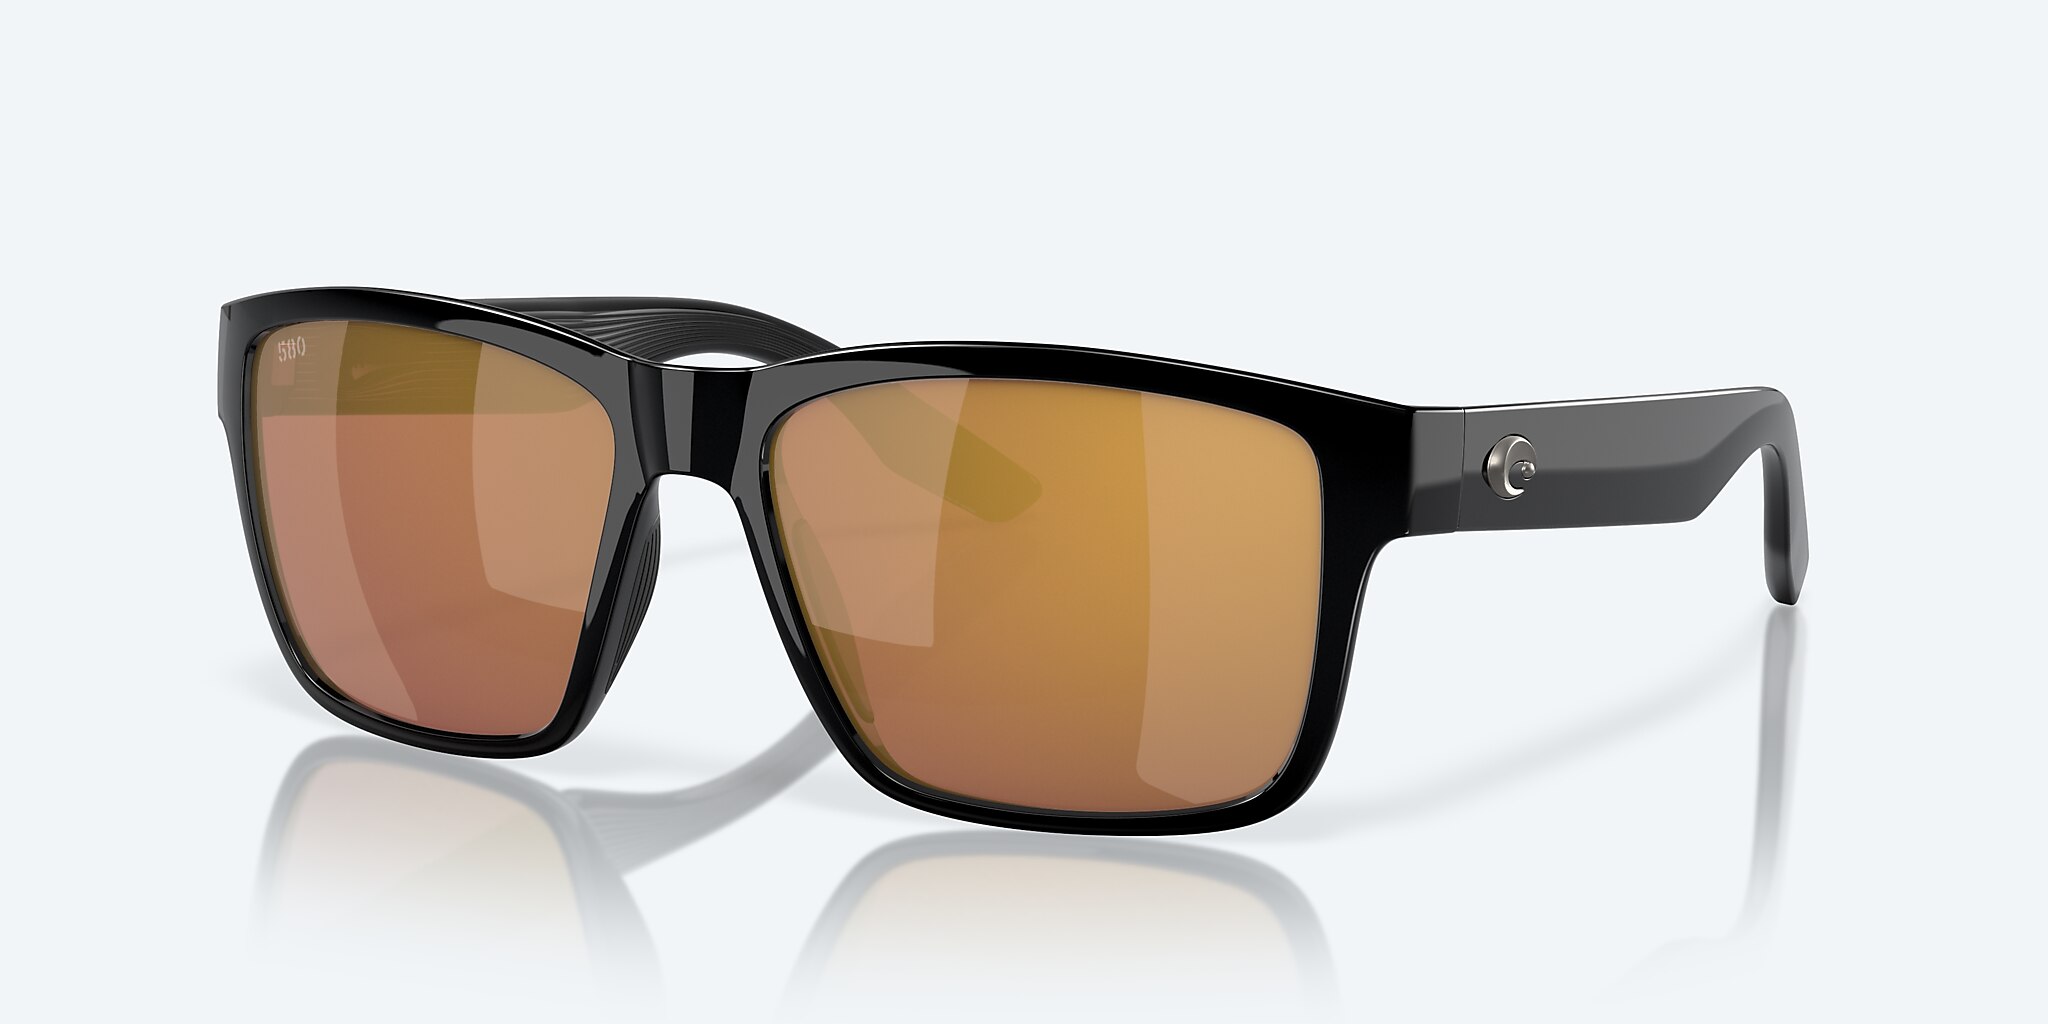 Costa Del Mar Paunch Sunglasses - Black/Green Mirror 580P